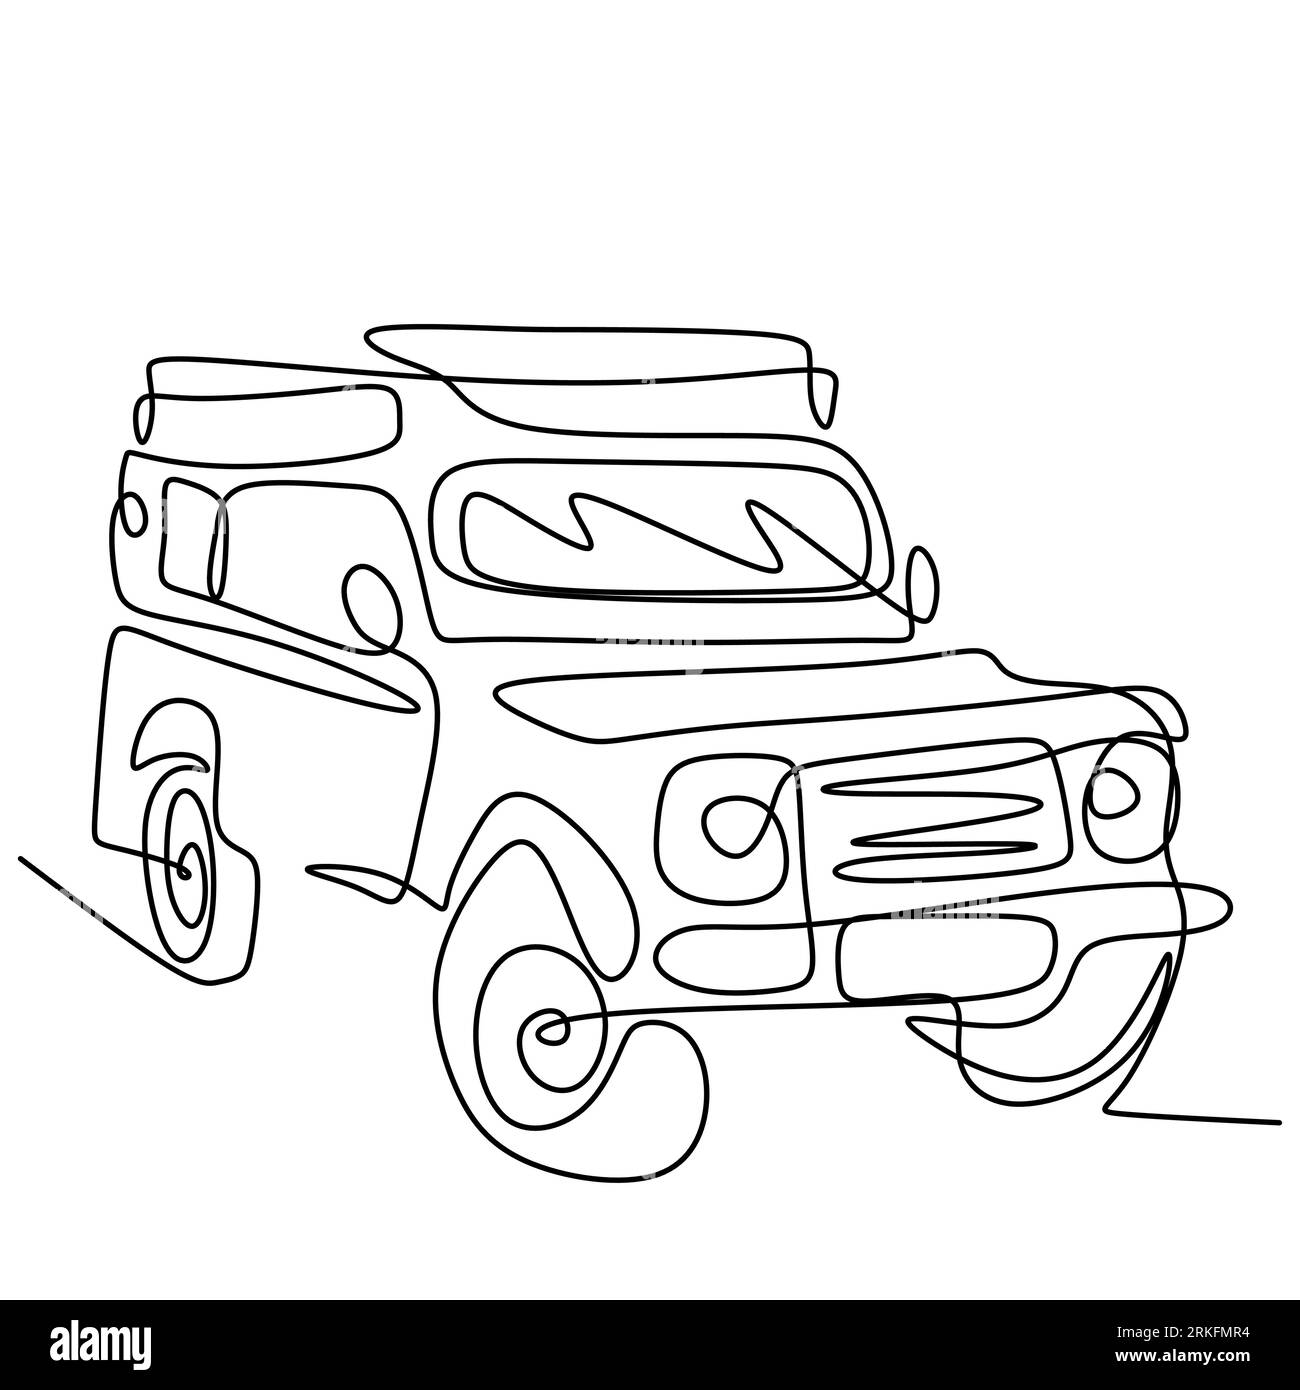 Une seule ligne tracée continue de voiture de wrangler de jeep. Une jeep classique isolée sur fond blanc. Aventure tout-terrain transport de véhicule de rallye c Illustration de Vecteur